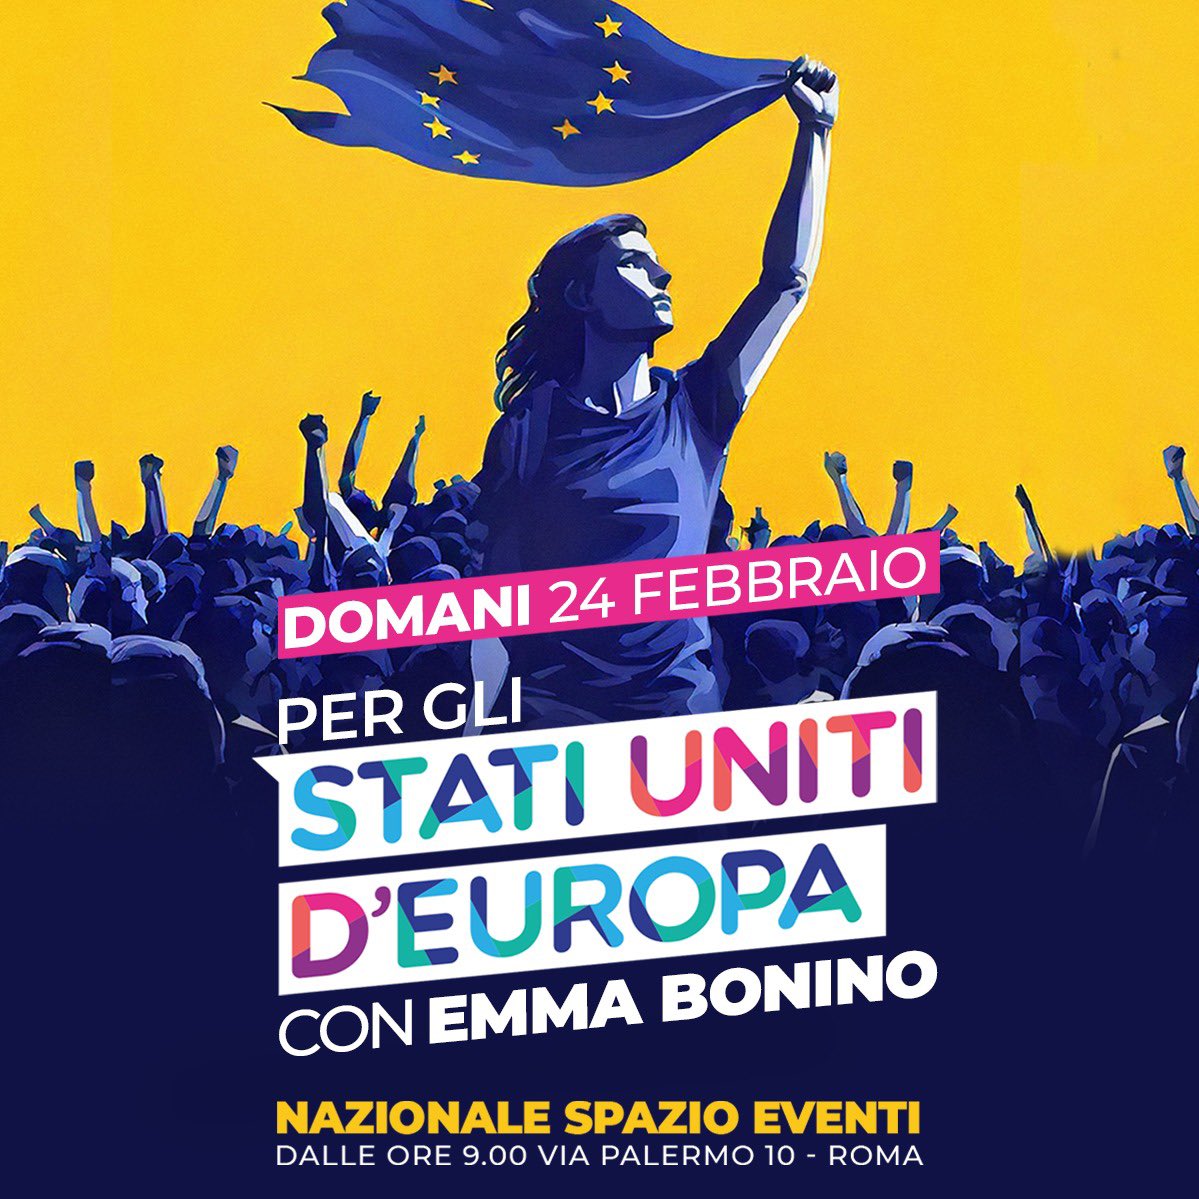 Ci vediamo domani a Roma, al Nazionale Spazio Eventi, per gli Stati Uniti d’Europa con Emma Bonino. Questa Convention sarà l’occasione per mettere al centro del dibattito politico il tema dell’Europa e del federalismo europeo in vista delle prossime elezioni europee dell’8 e 9